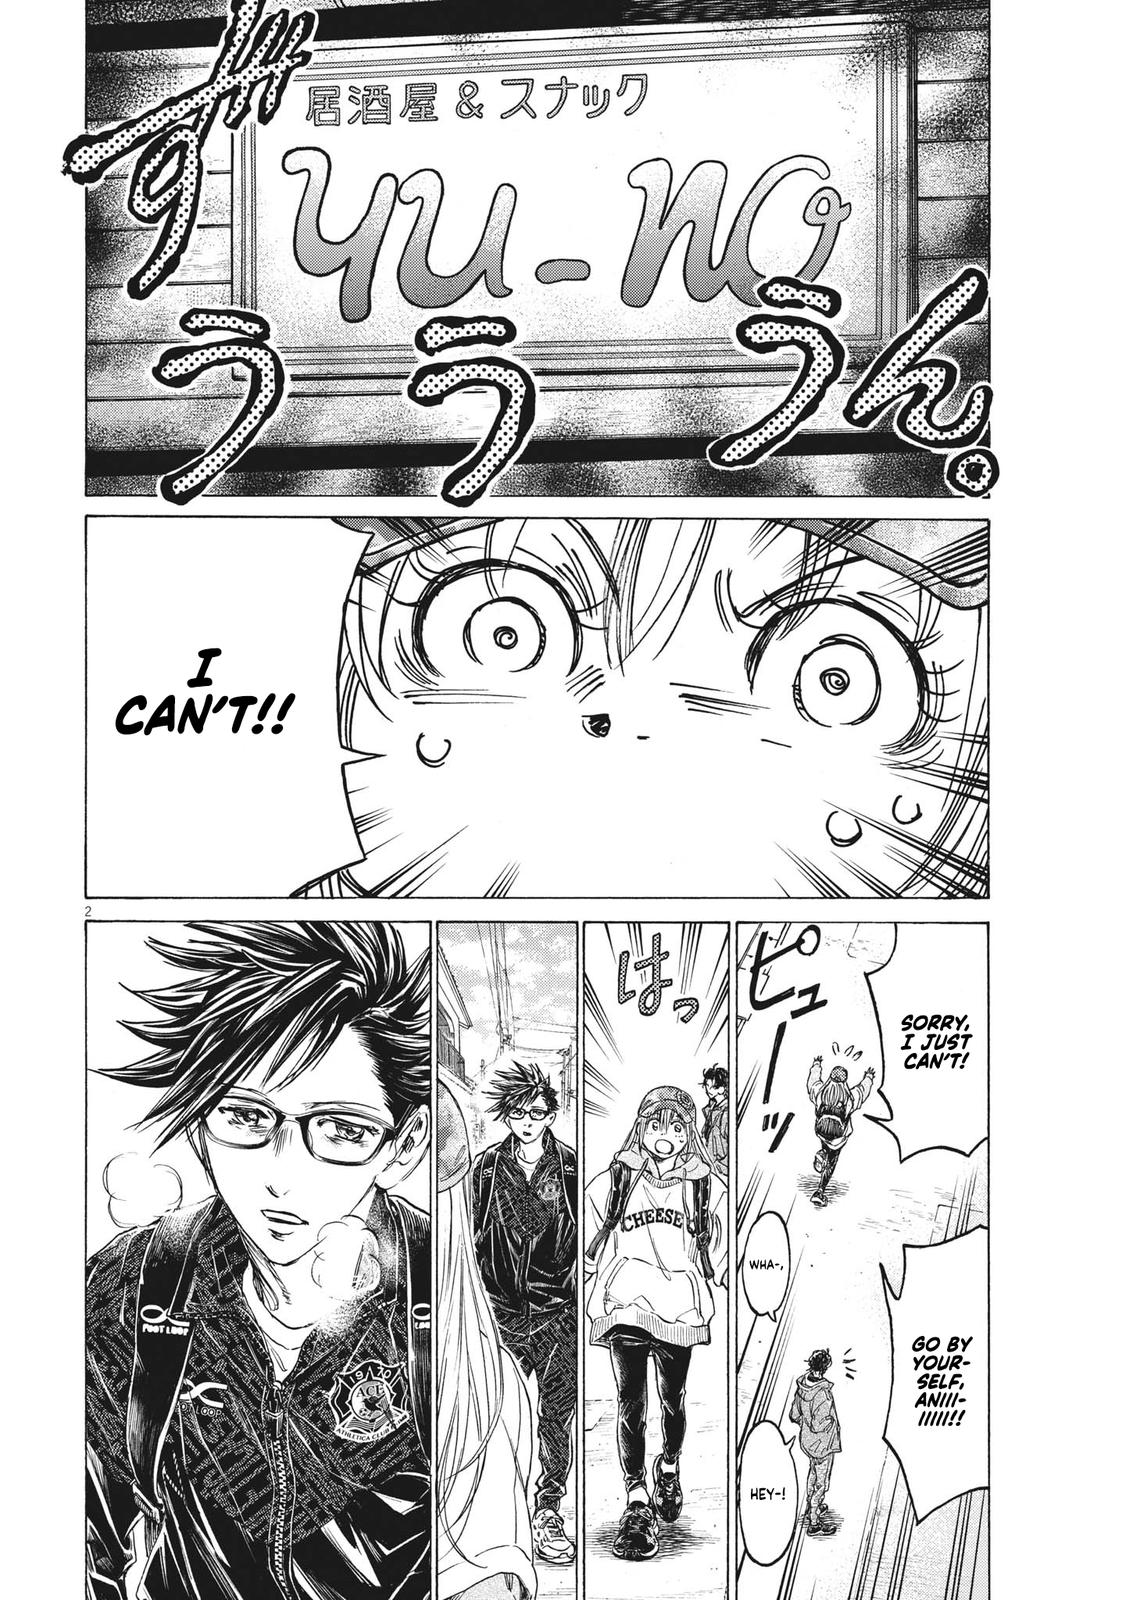 Ao Ashi, Chapter 341 - Ao Ashi Manga Online